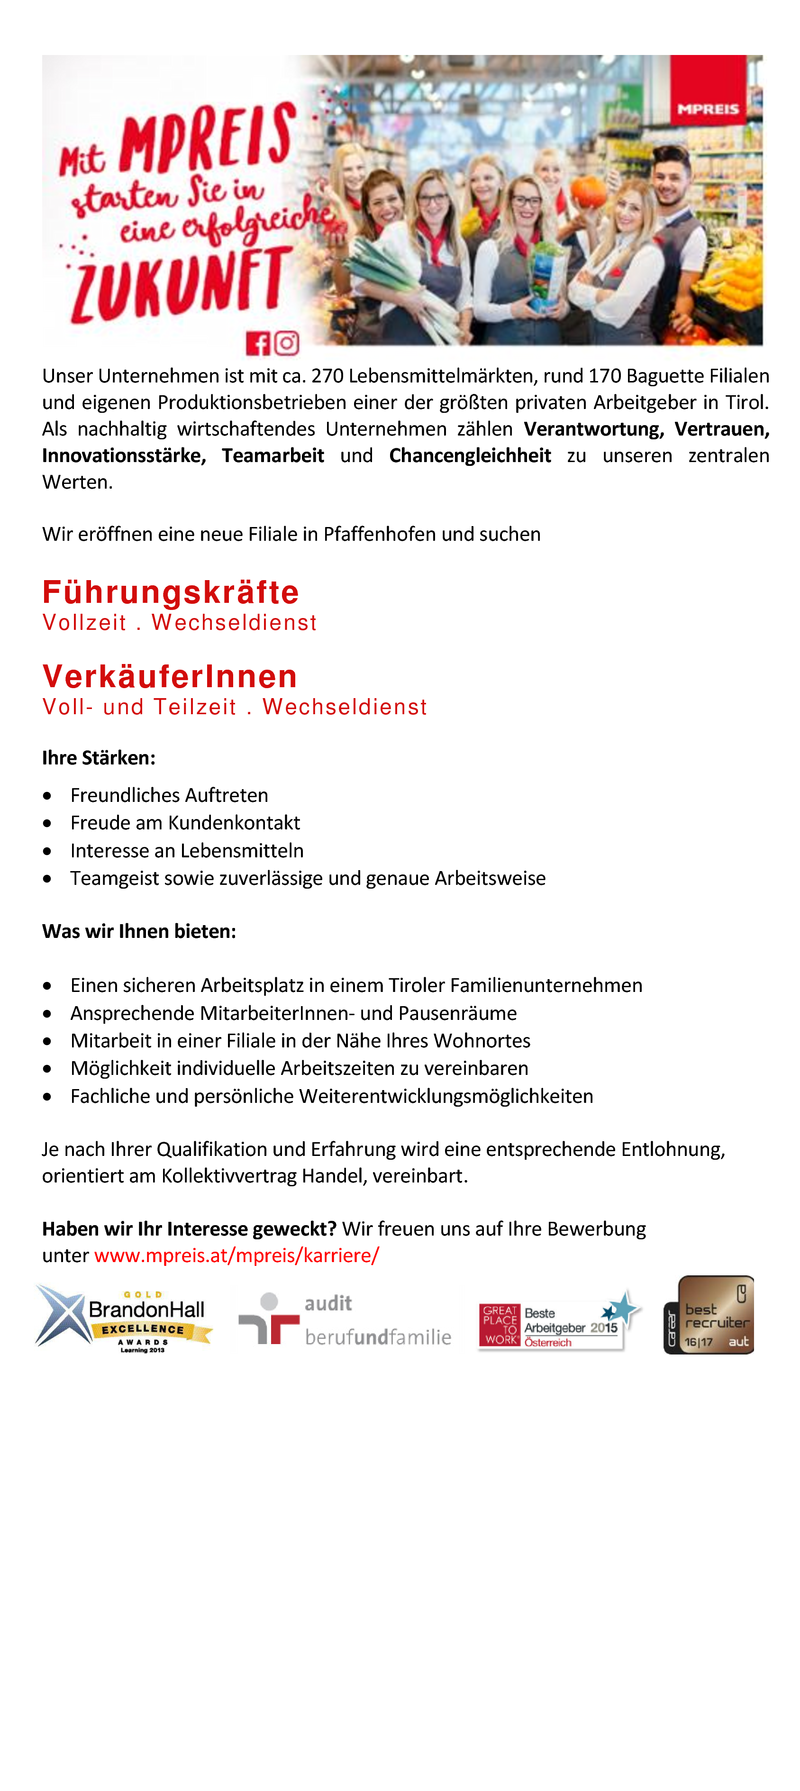 VerkäuferInnen und Führungskräfte für unsere neue Filiale in Pfaffenhofen